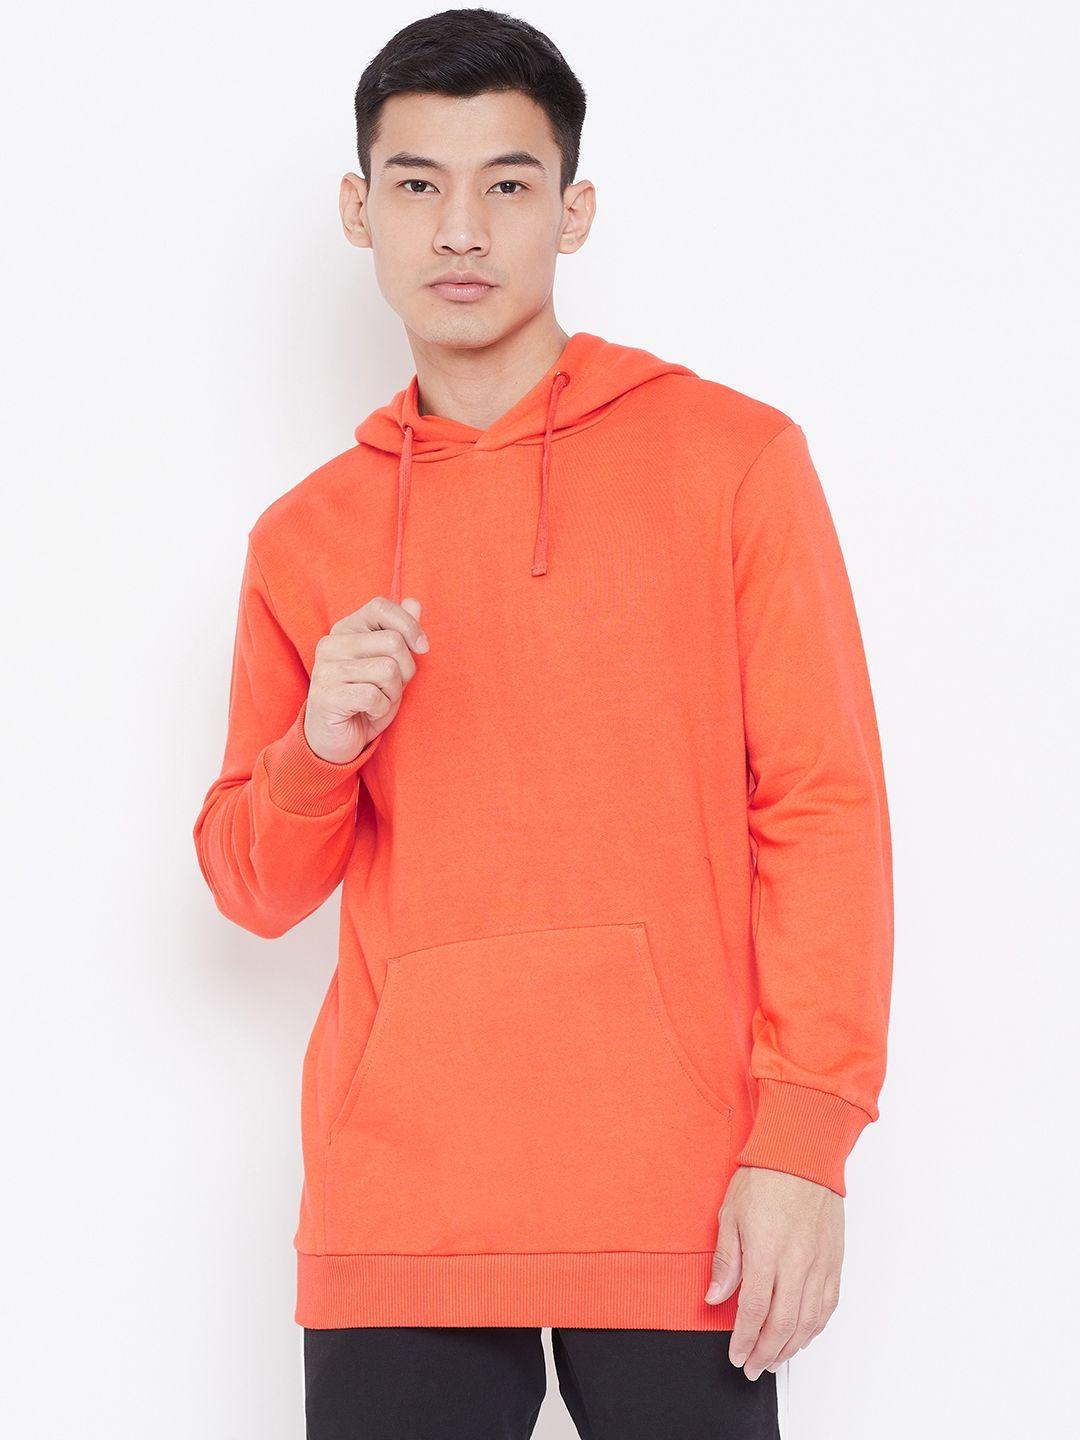 aesthetic bodies men orange solid hooded sweatshirt